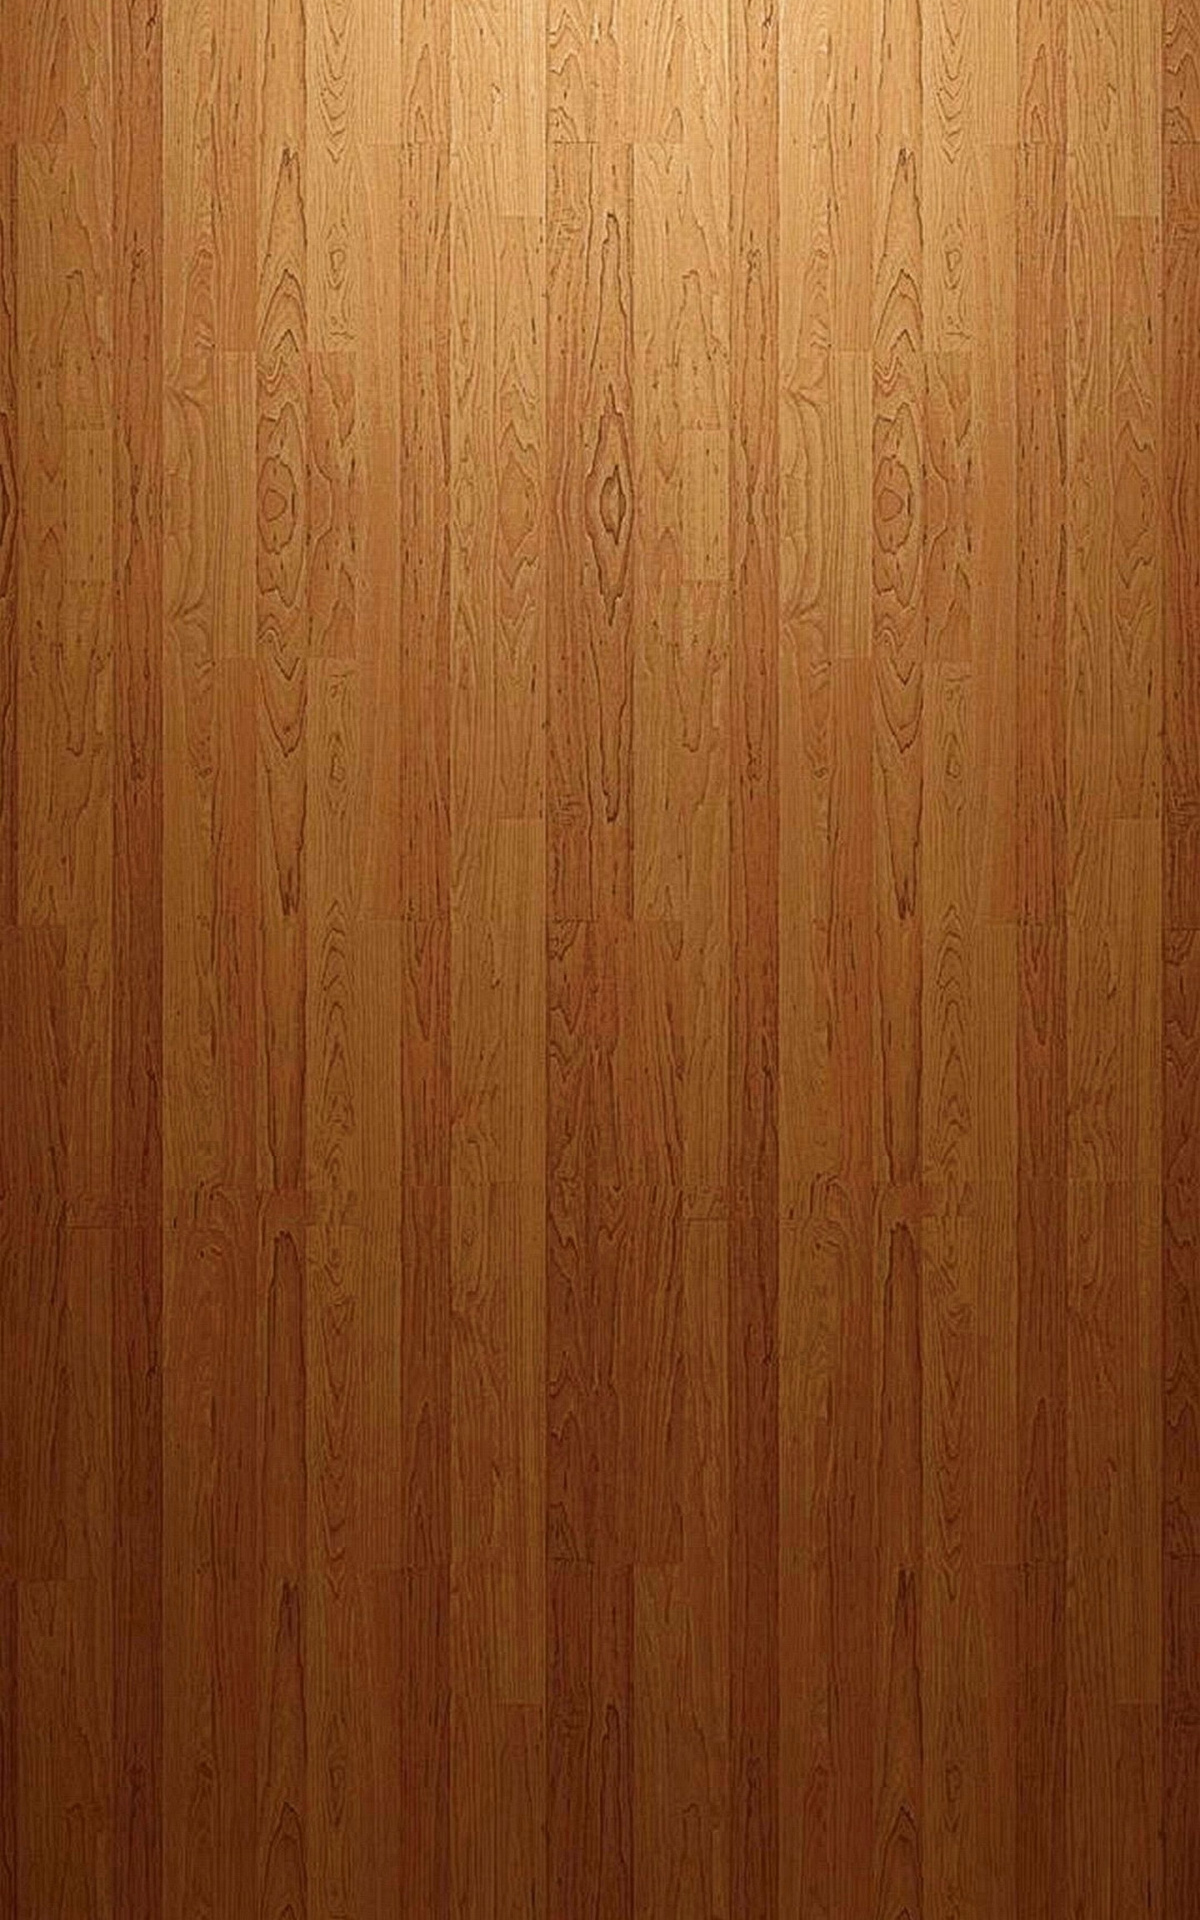 Hardwood Floor, Samsung Galaxy Note 5, Ultra HD texture, Realistic wood grain, 1200x1920 HD Handy